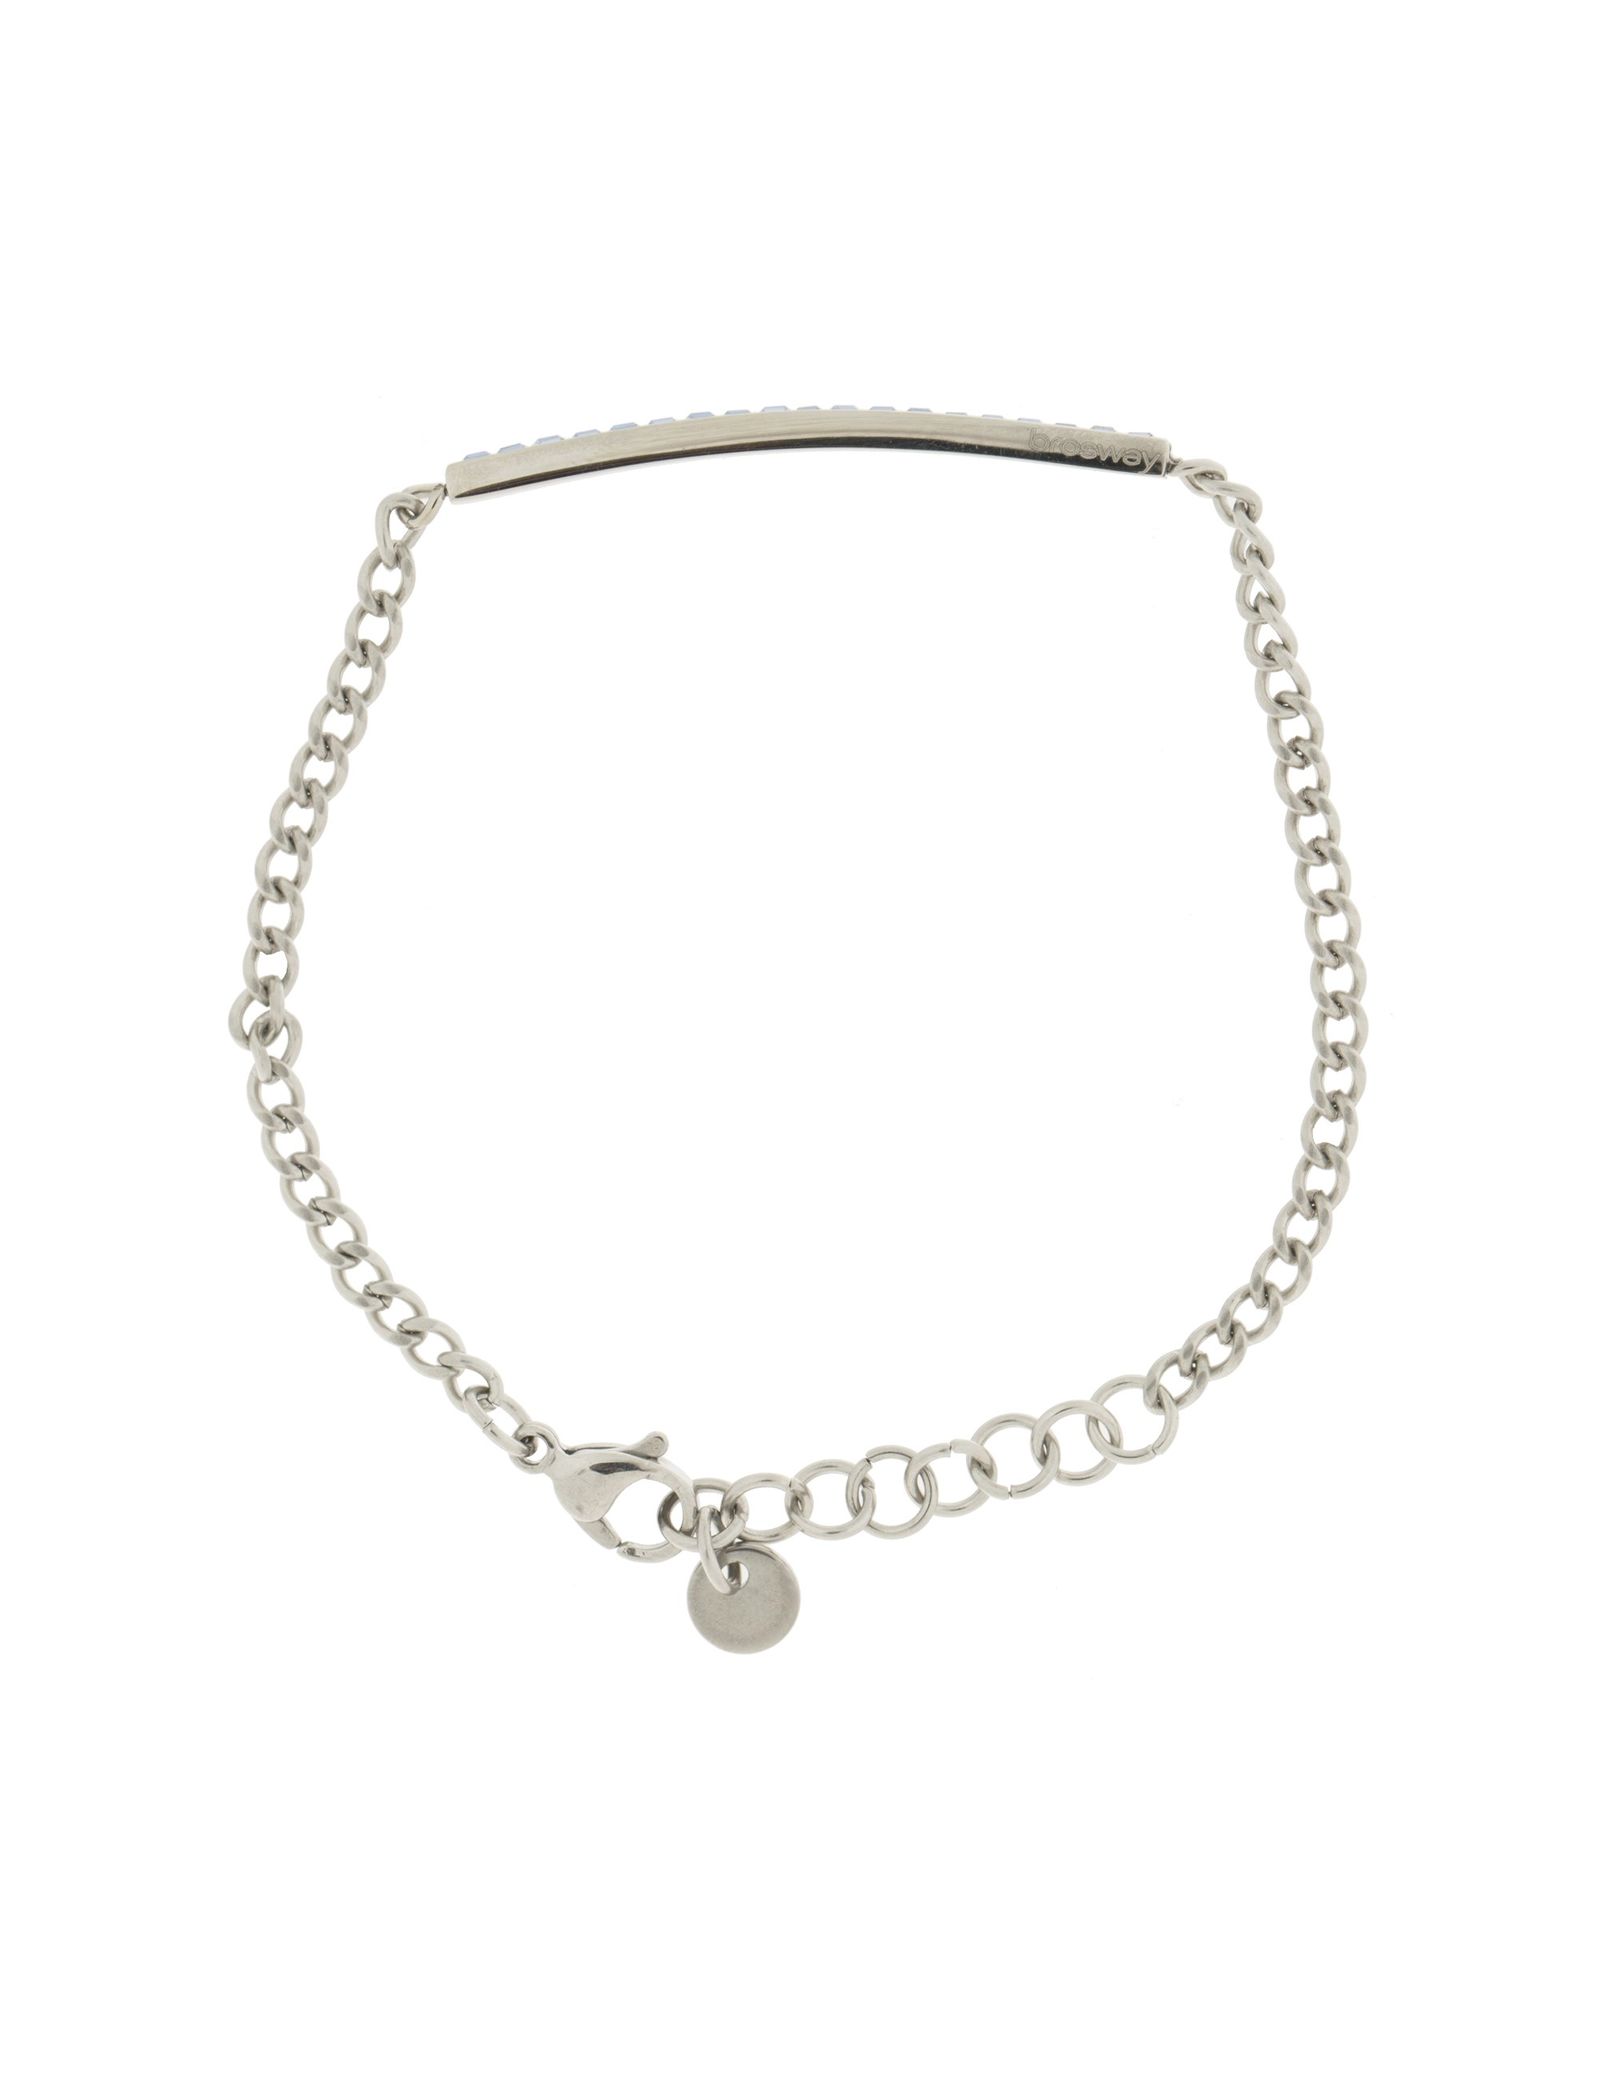 دستبند استیل زنجیری زنانه - برازوی - نقره اي  - 4